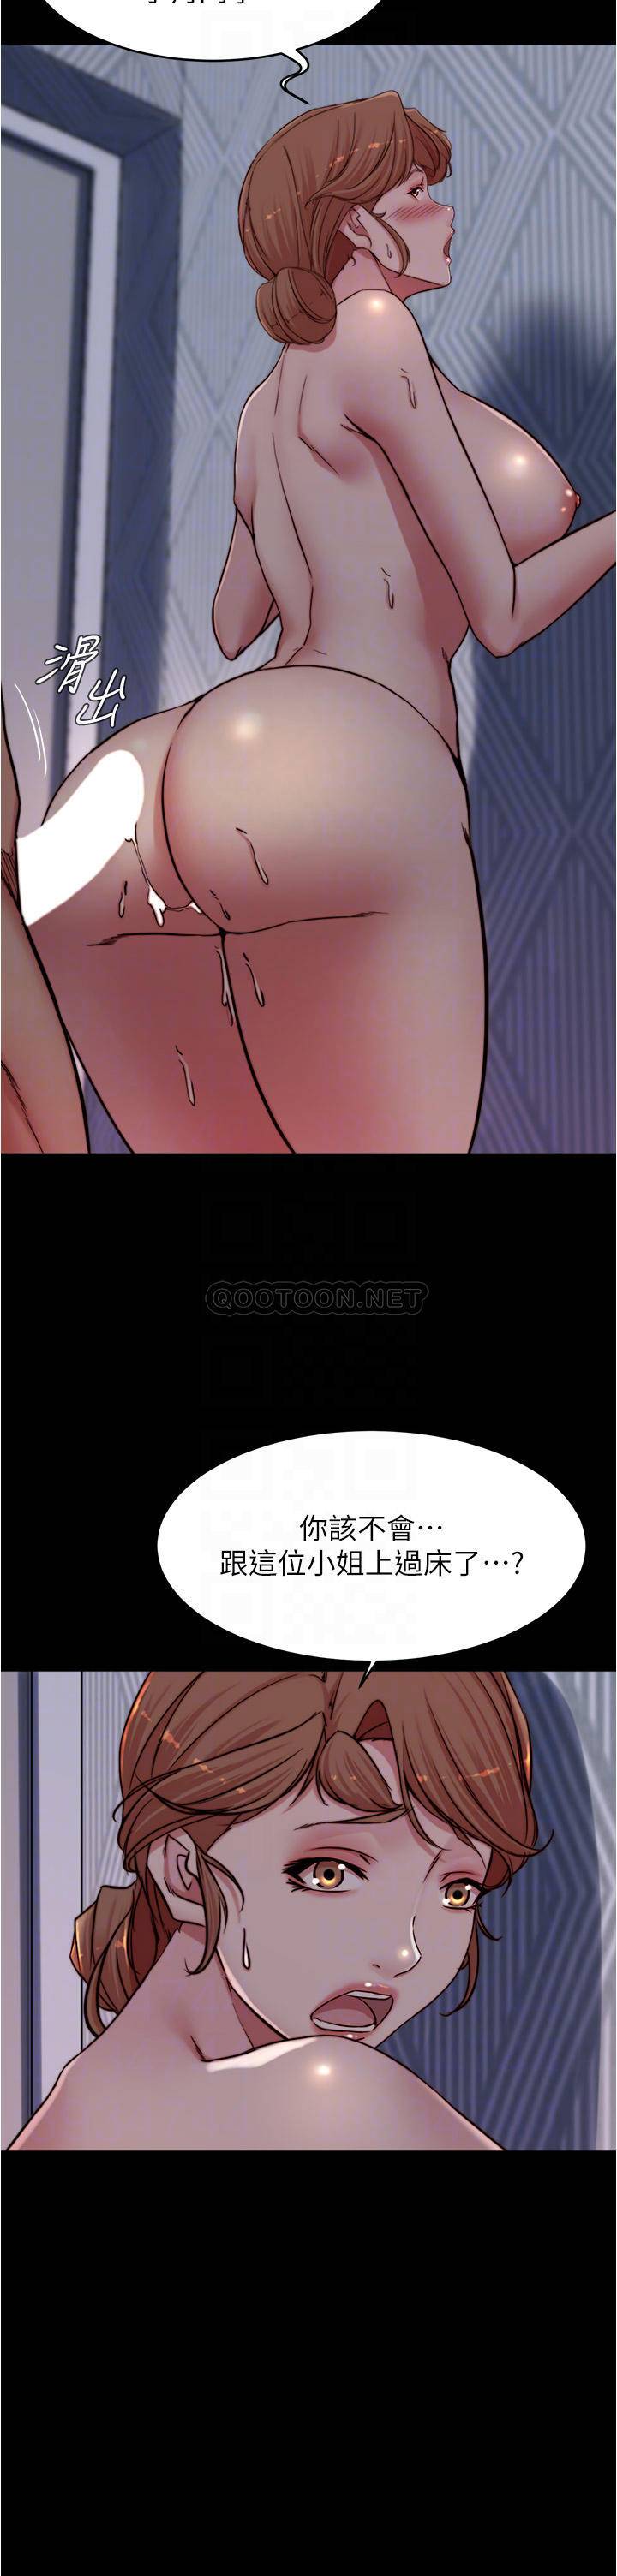 韩国污漫画 小褲褲筆記 第82话 旁观到欲火焚身的穗桦 8